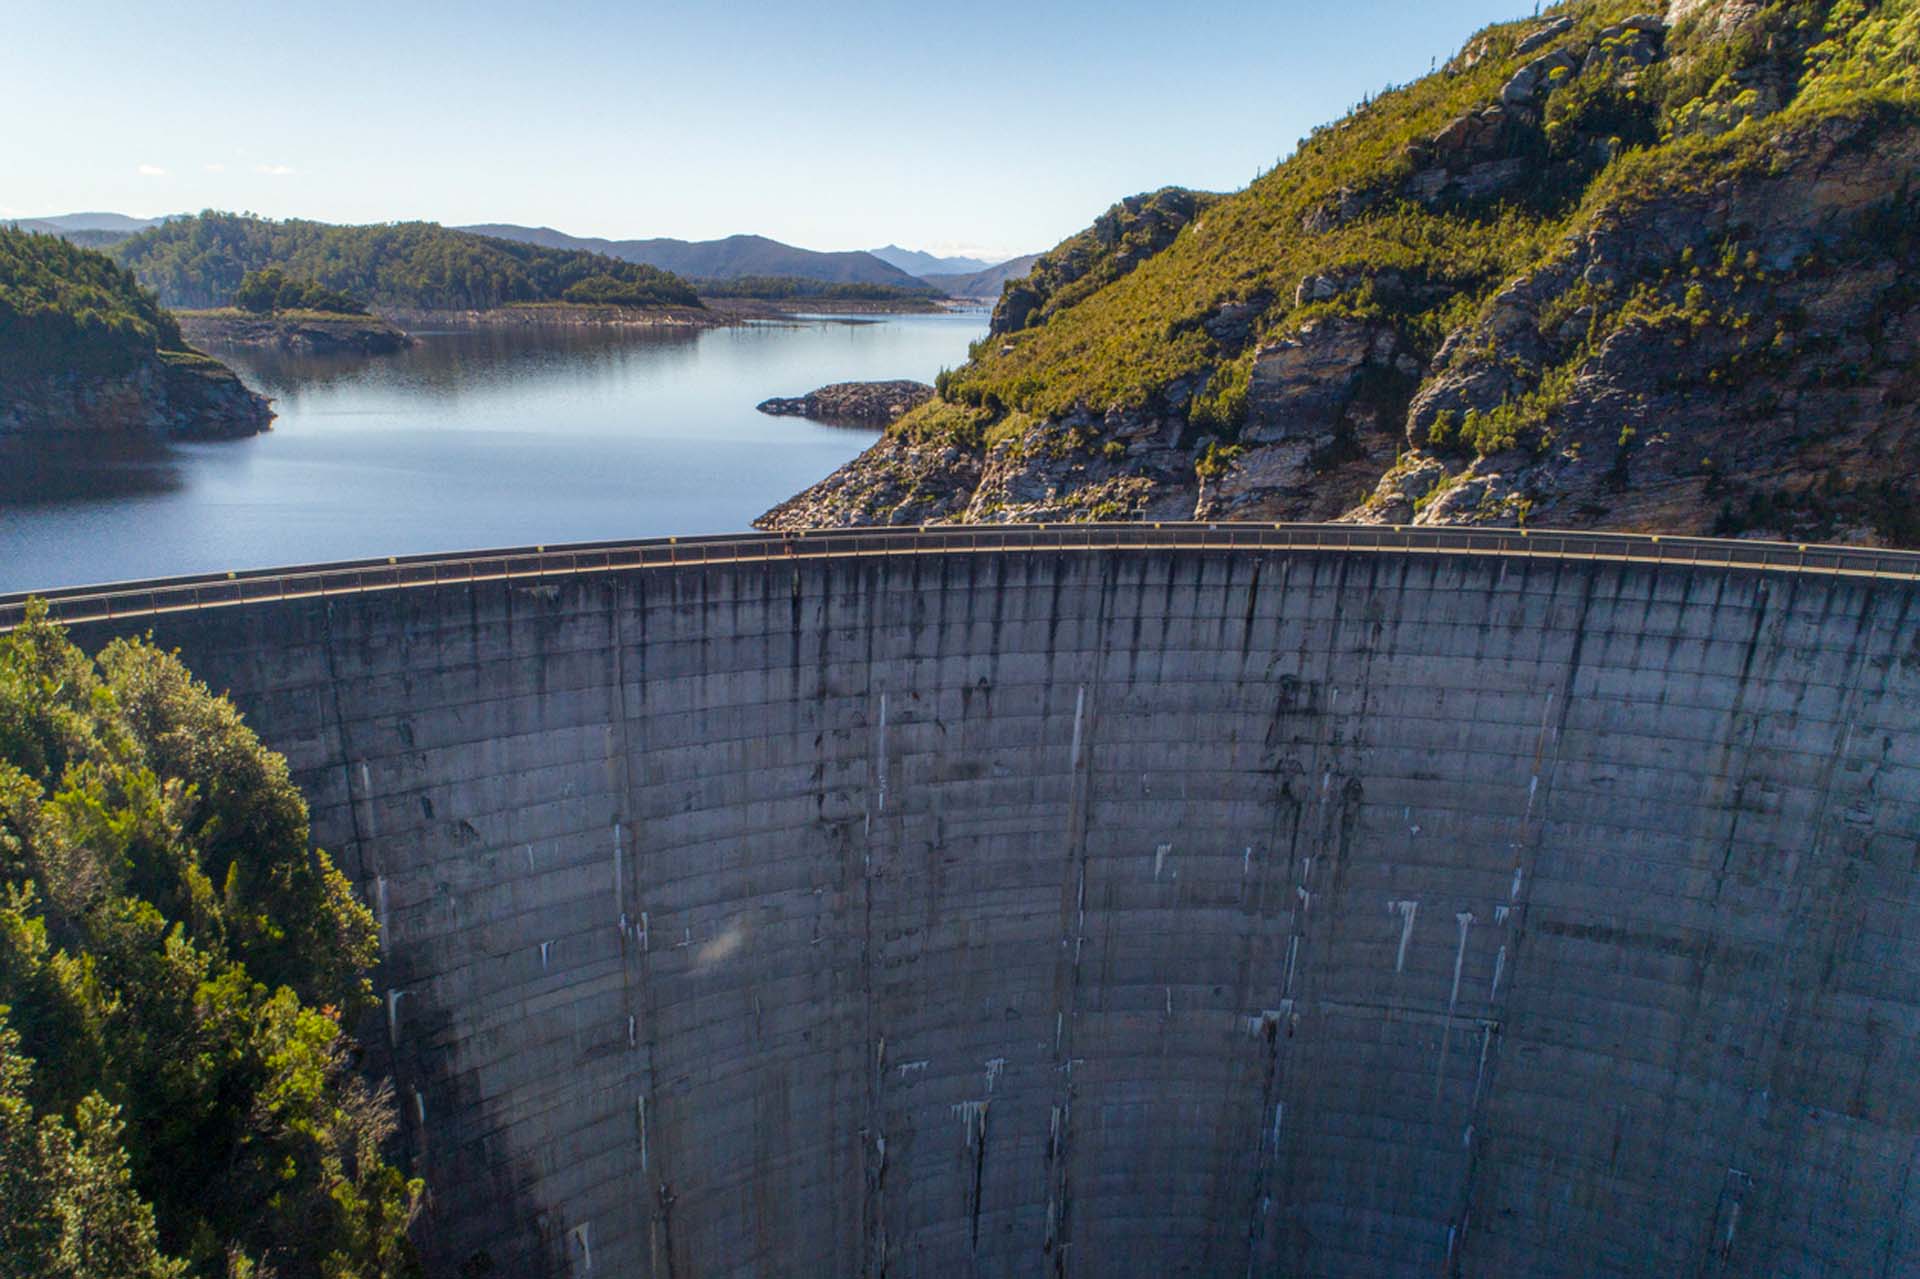 Beeindruckende Aufnahme eines großen Staudamms mit integrierten Sensorkabeln zur Überwachung von Leckagen und Reservoirzuständen.